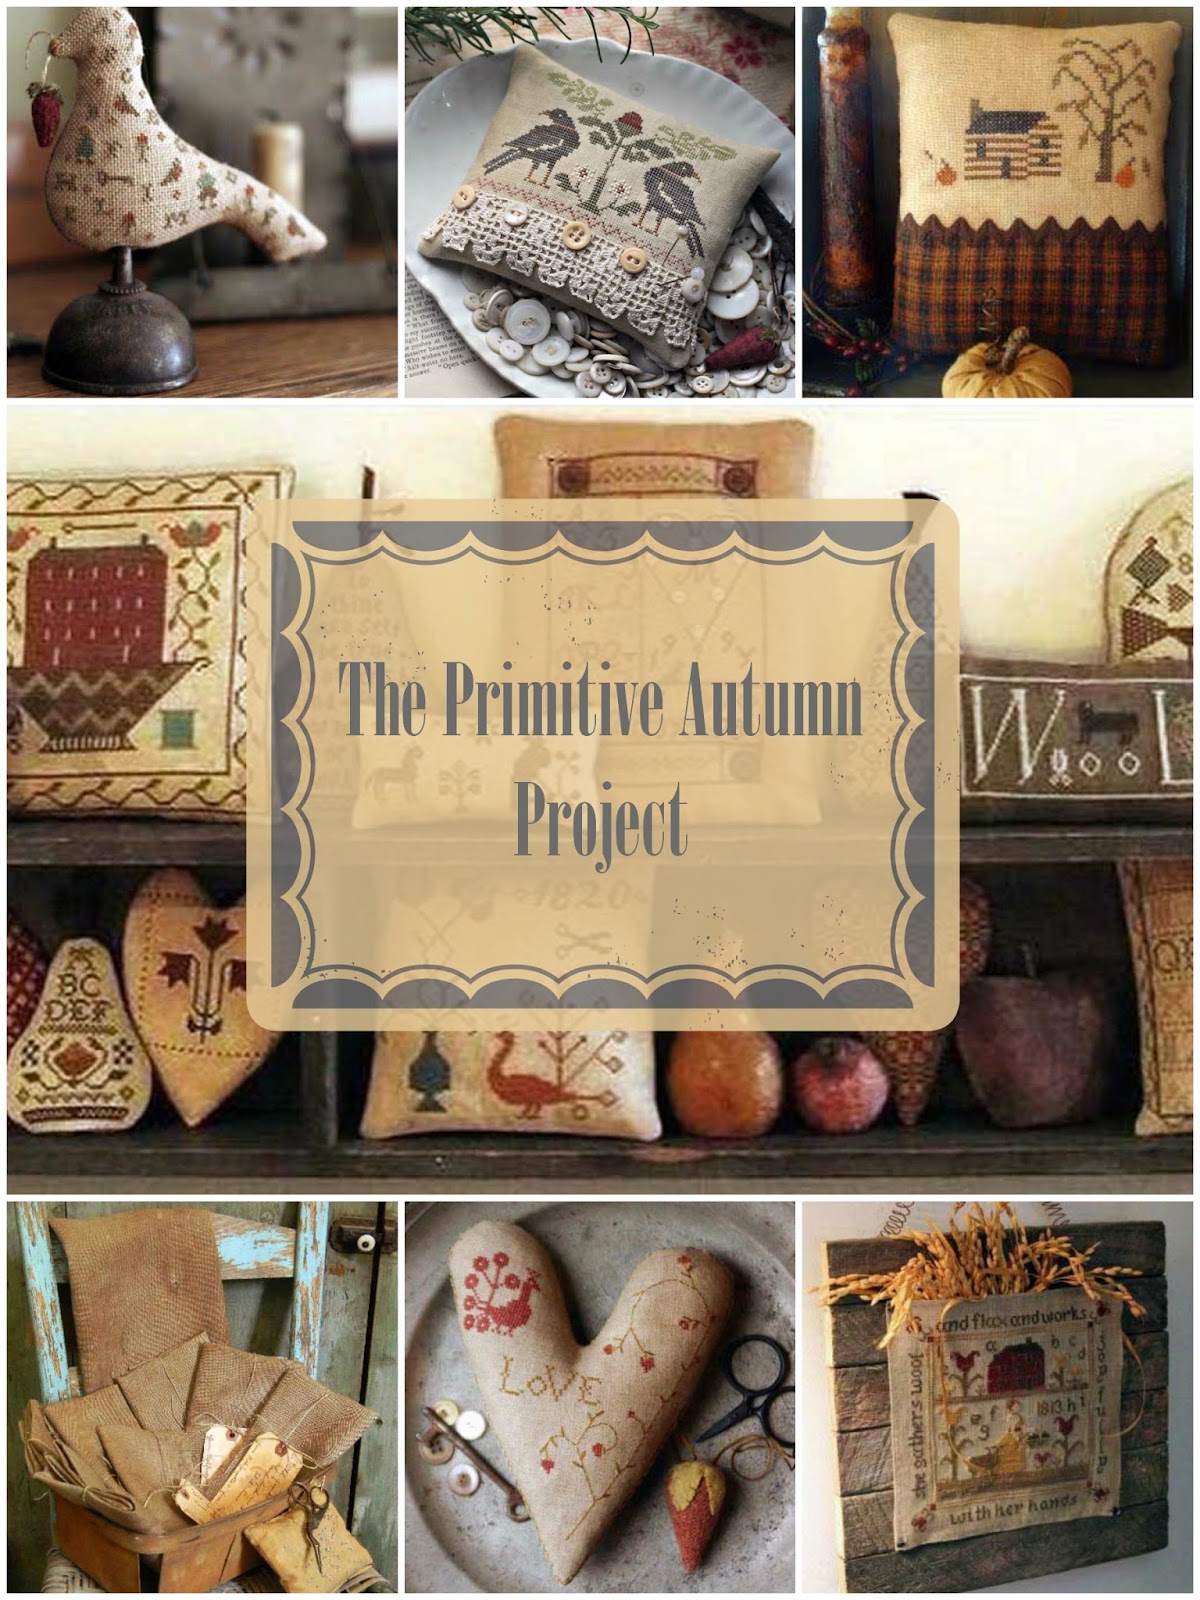 Проект "The Primitive Autumn" (Примитивная Осень)